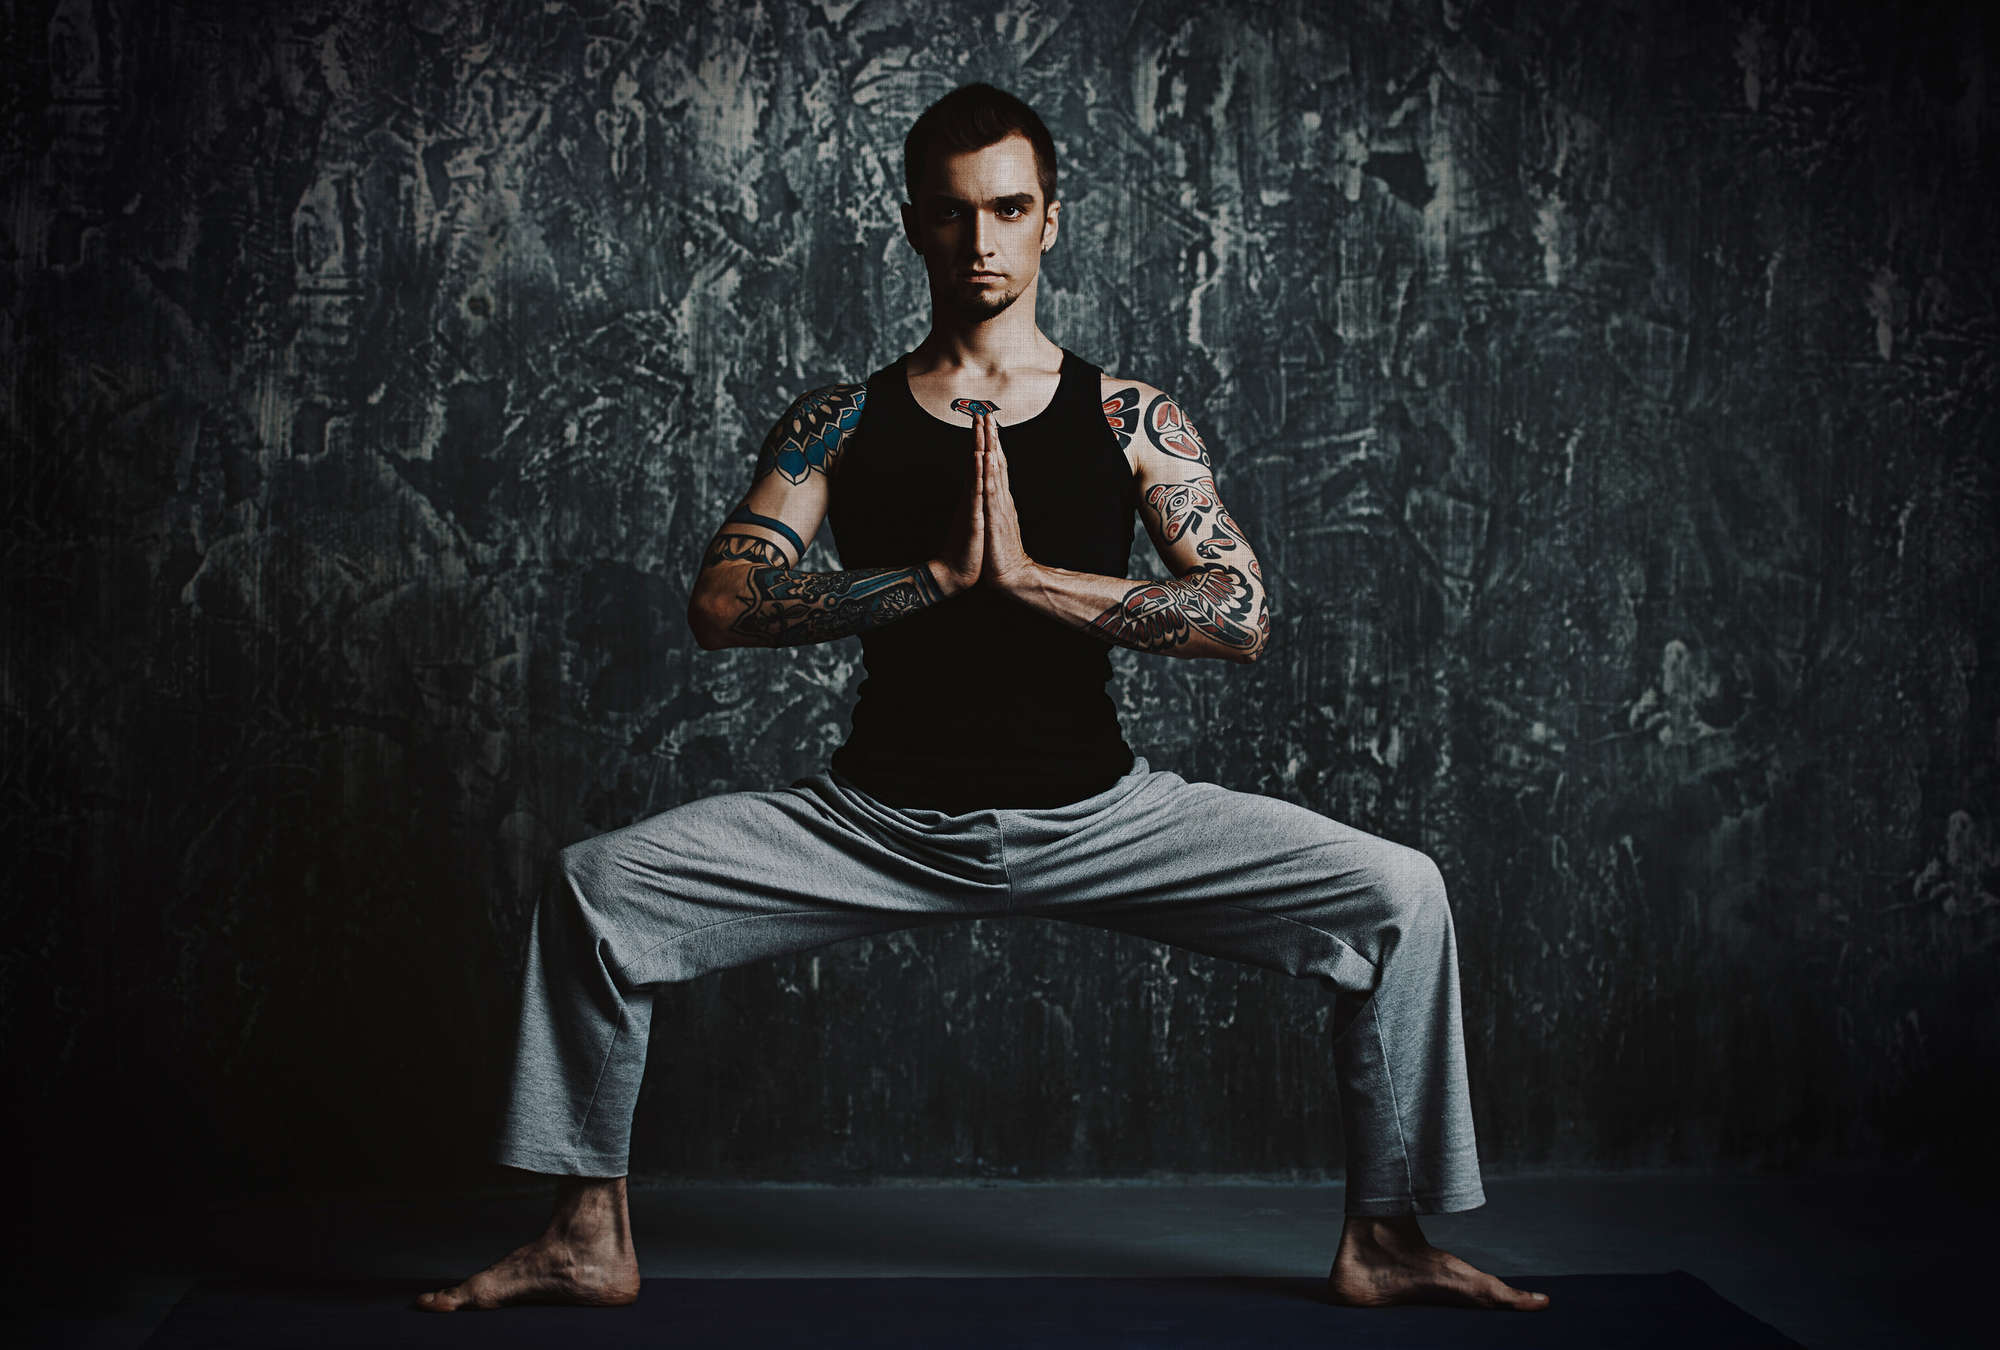             Chandra 1 - Hombre en postura de yoga como fotomural en estructura de lino natural - Azul, Negro | Vellón liso mate
        